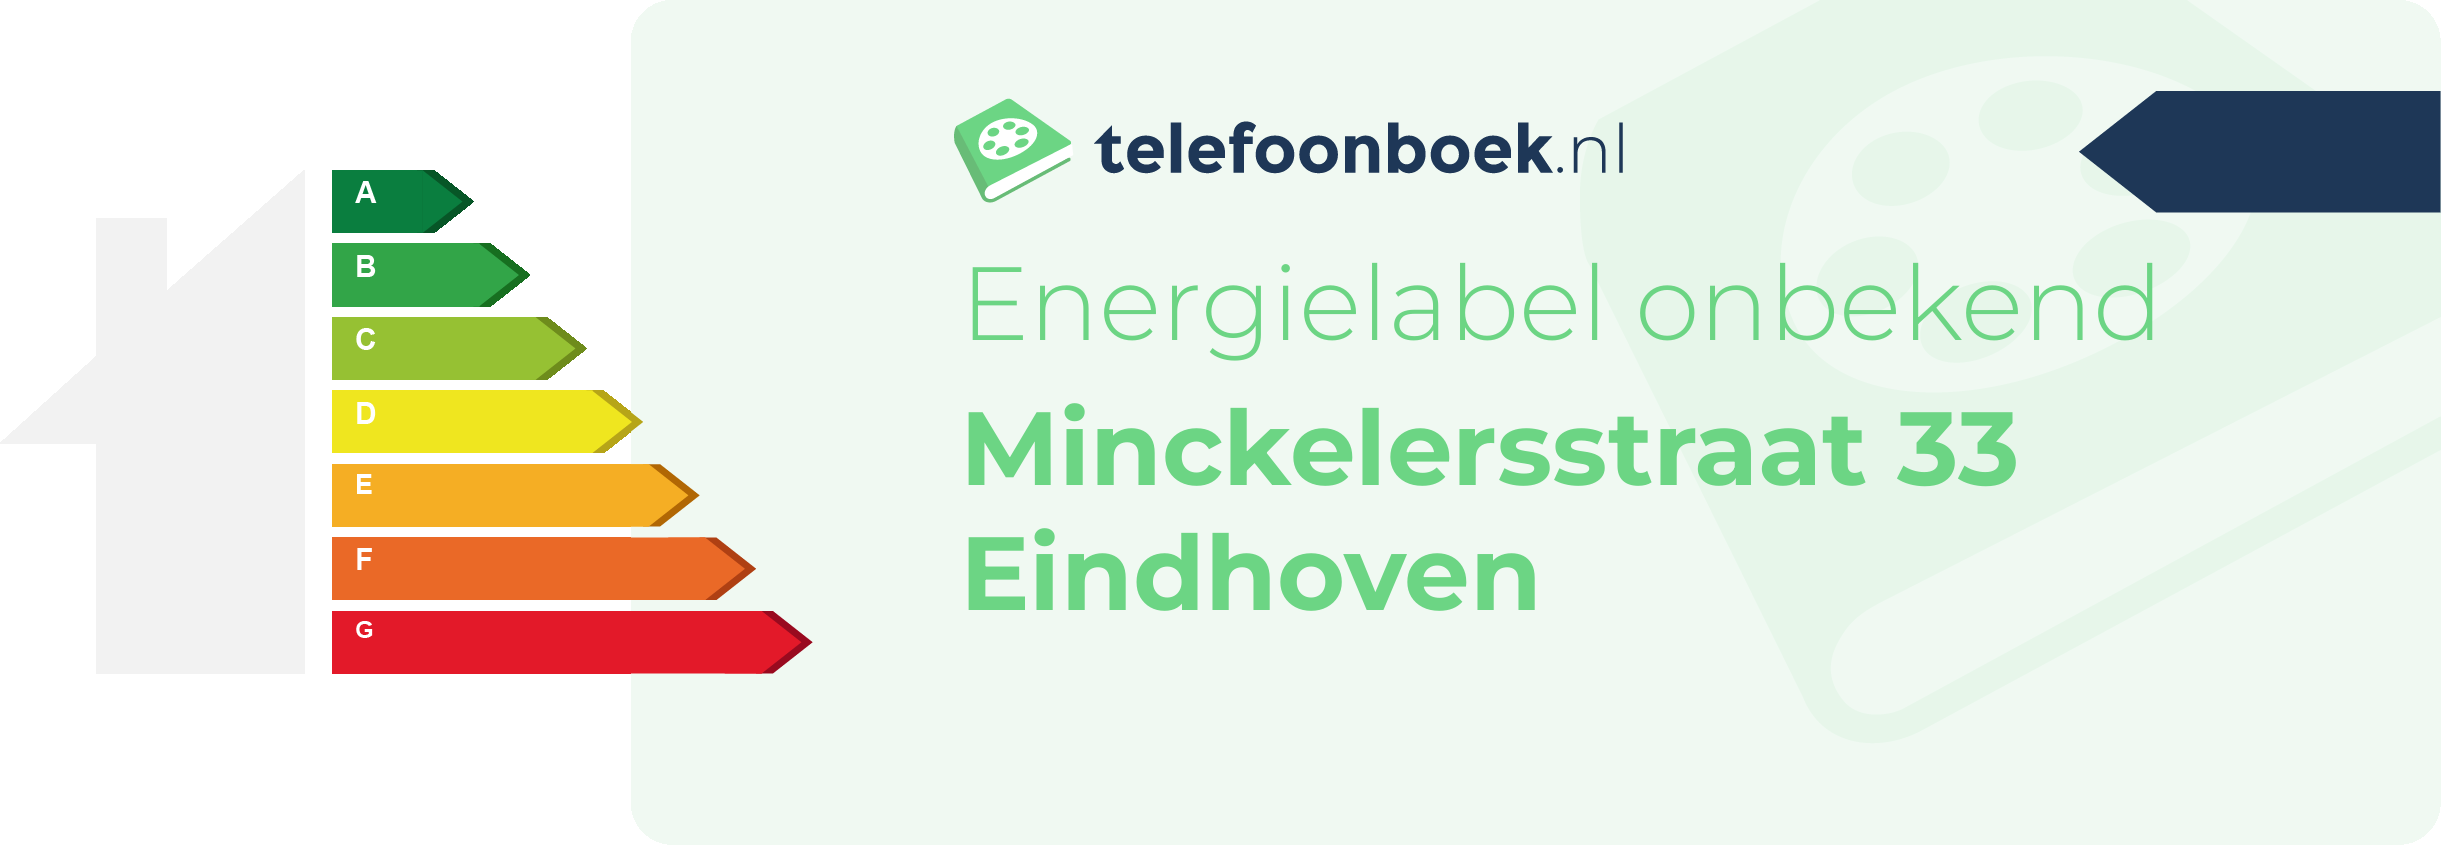 Energielabel Minckelersstraat 33 Eindhoven